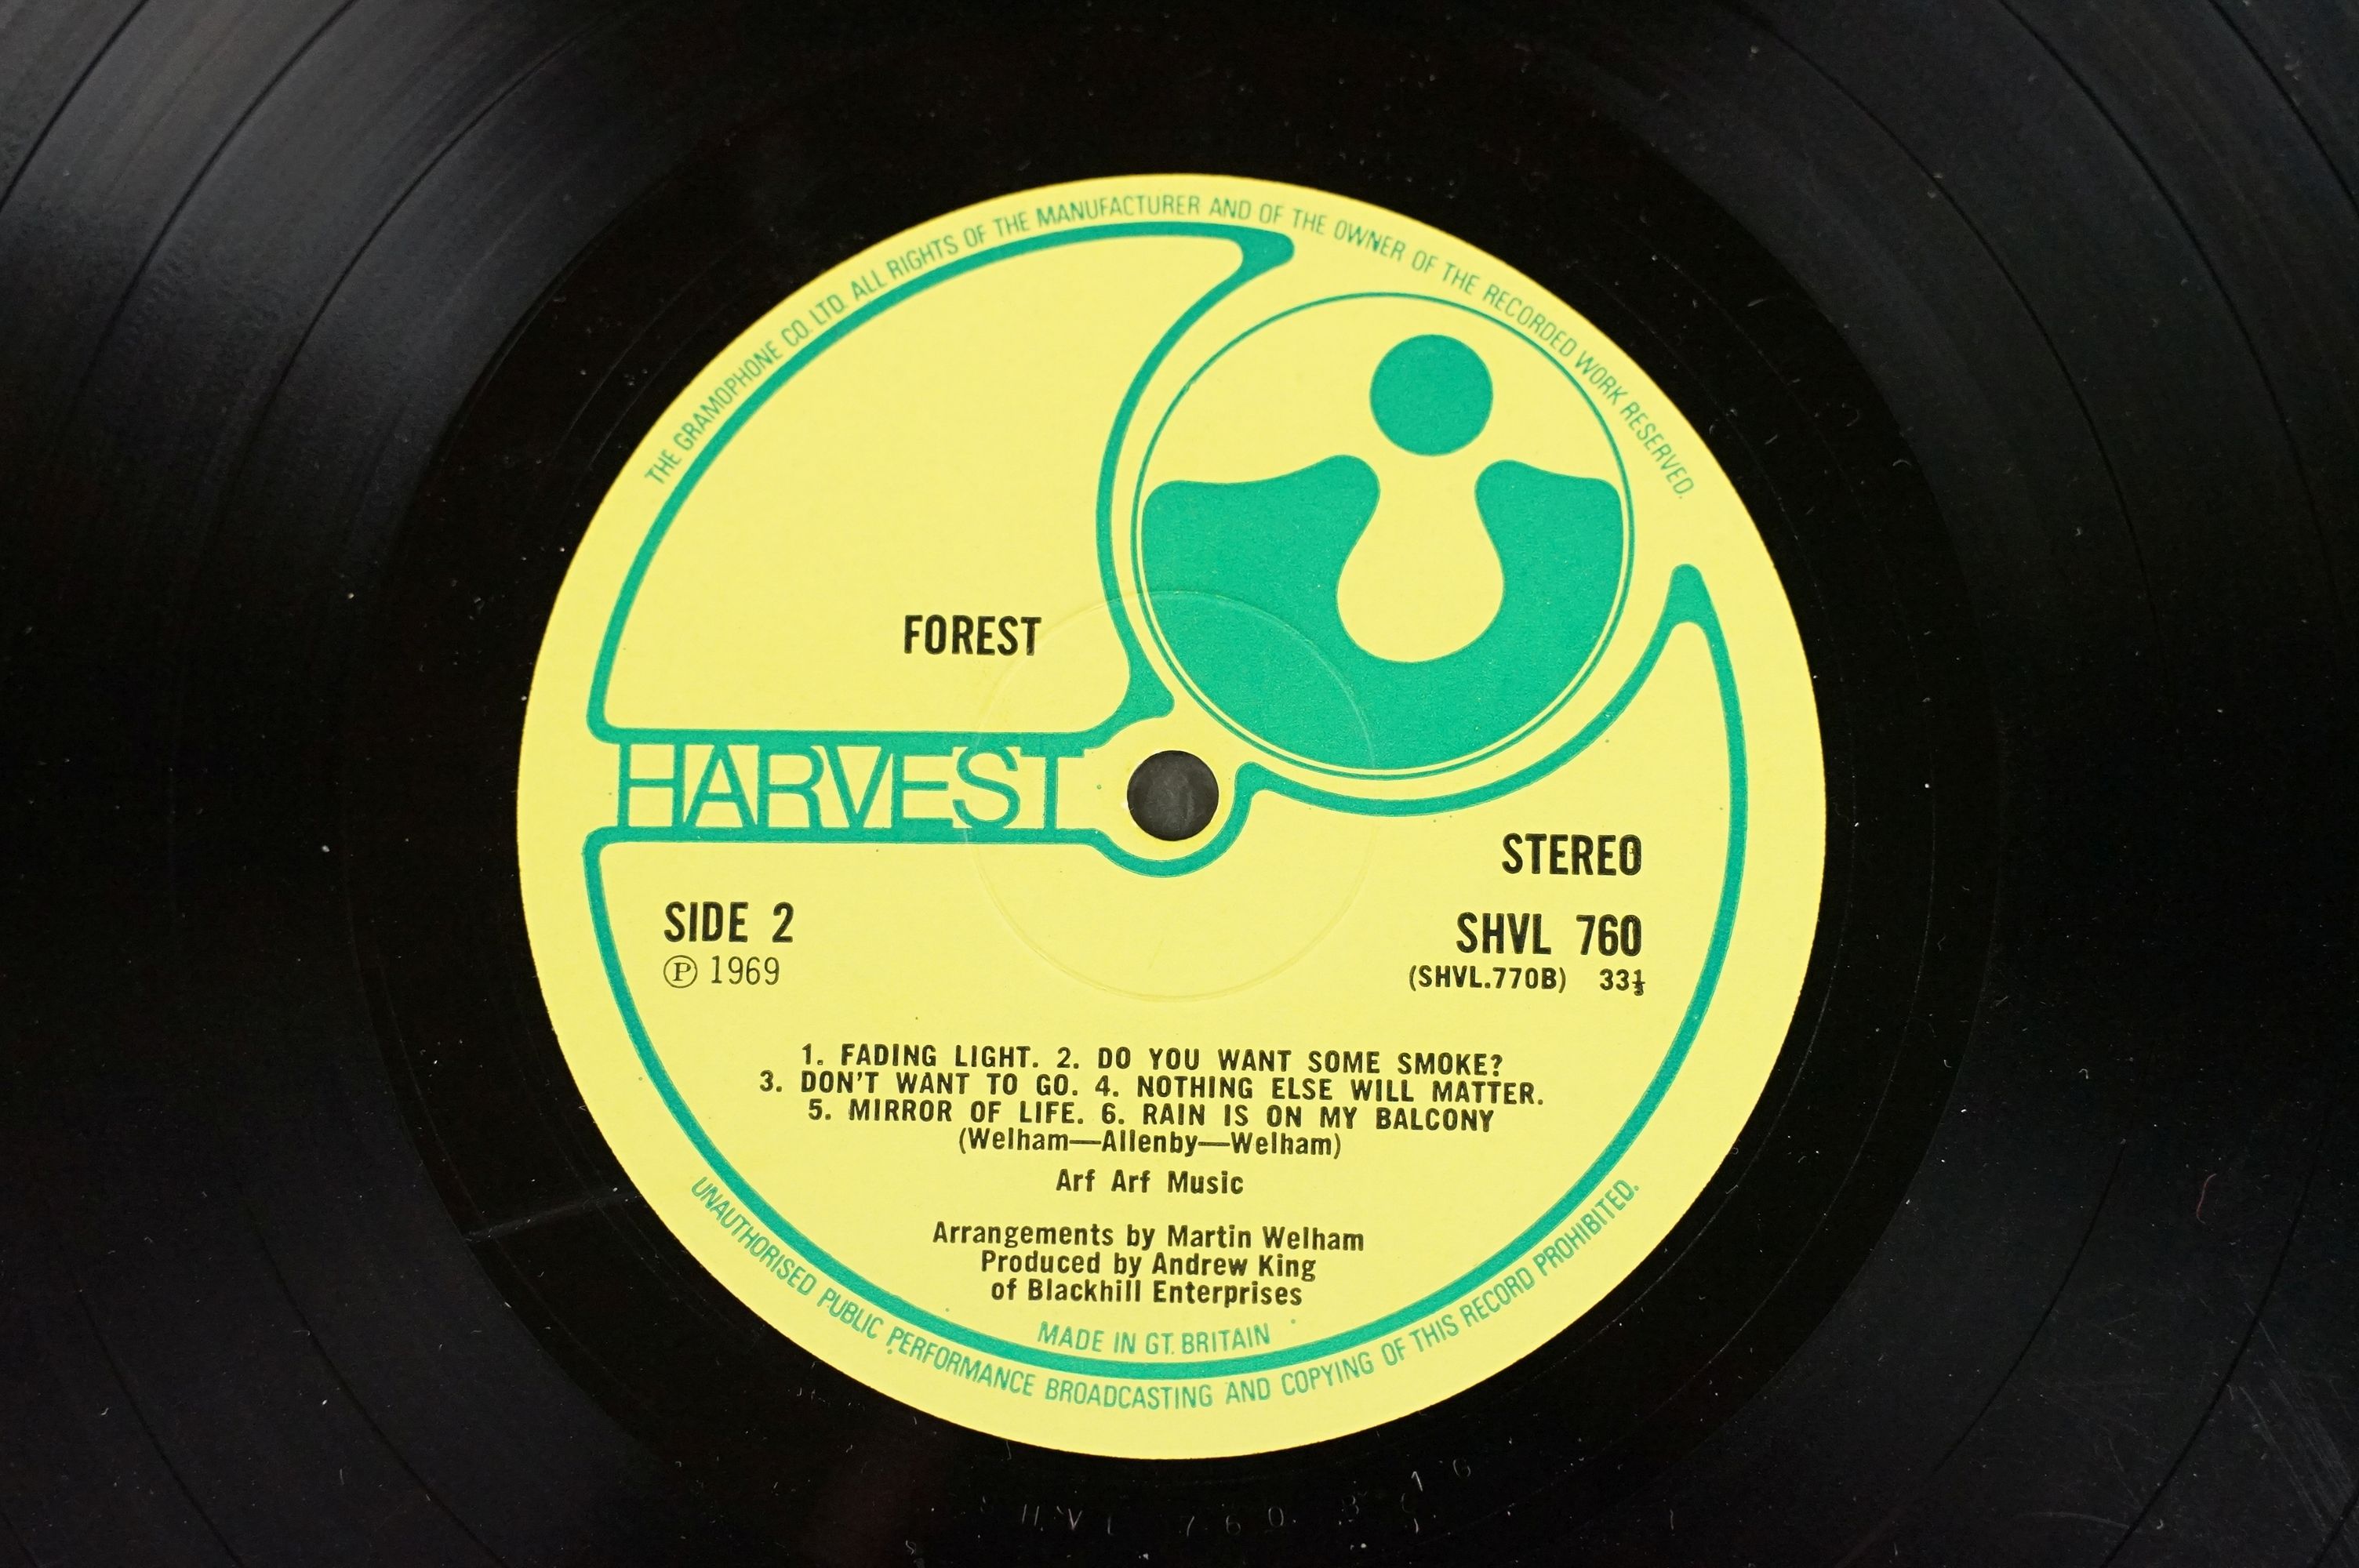 Vinyl - Forest self titled LP on Harvest Records SHVL 760. Original UK 1st pressing, no EMI on - Image 5 of 7